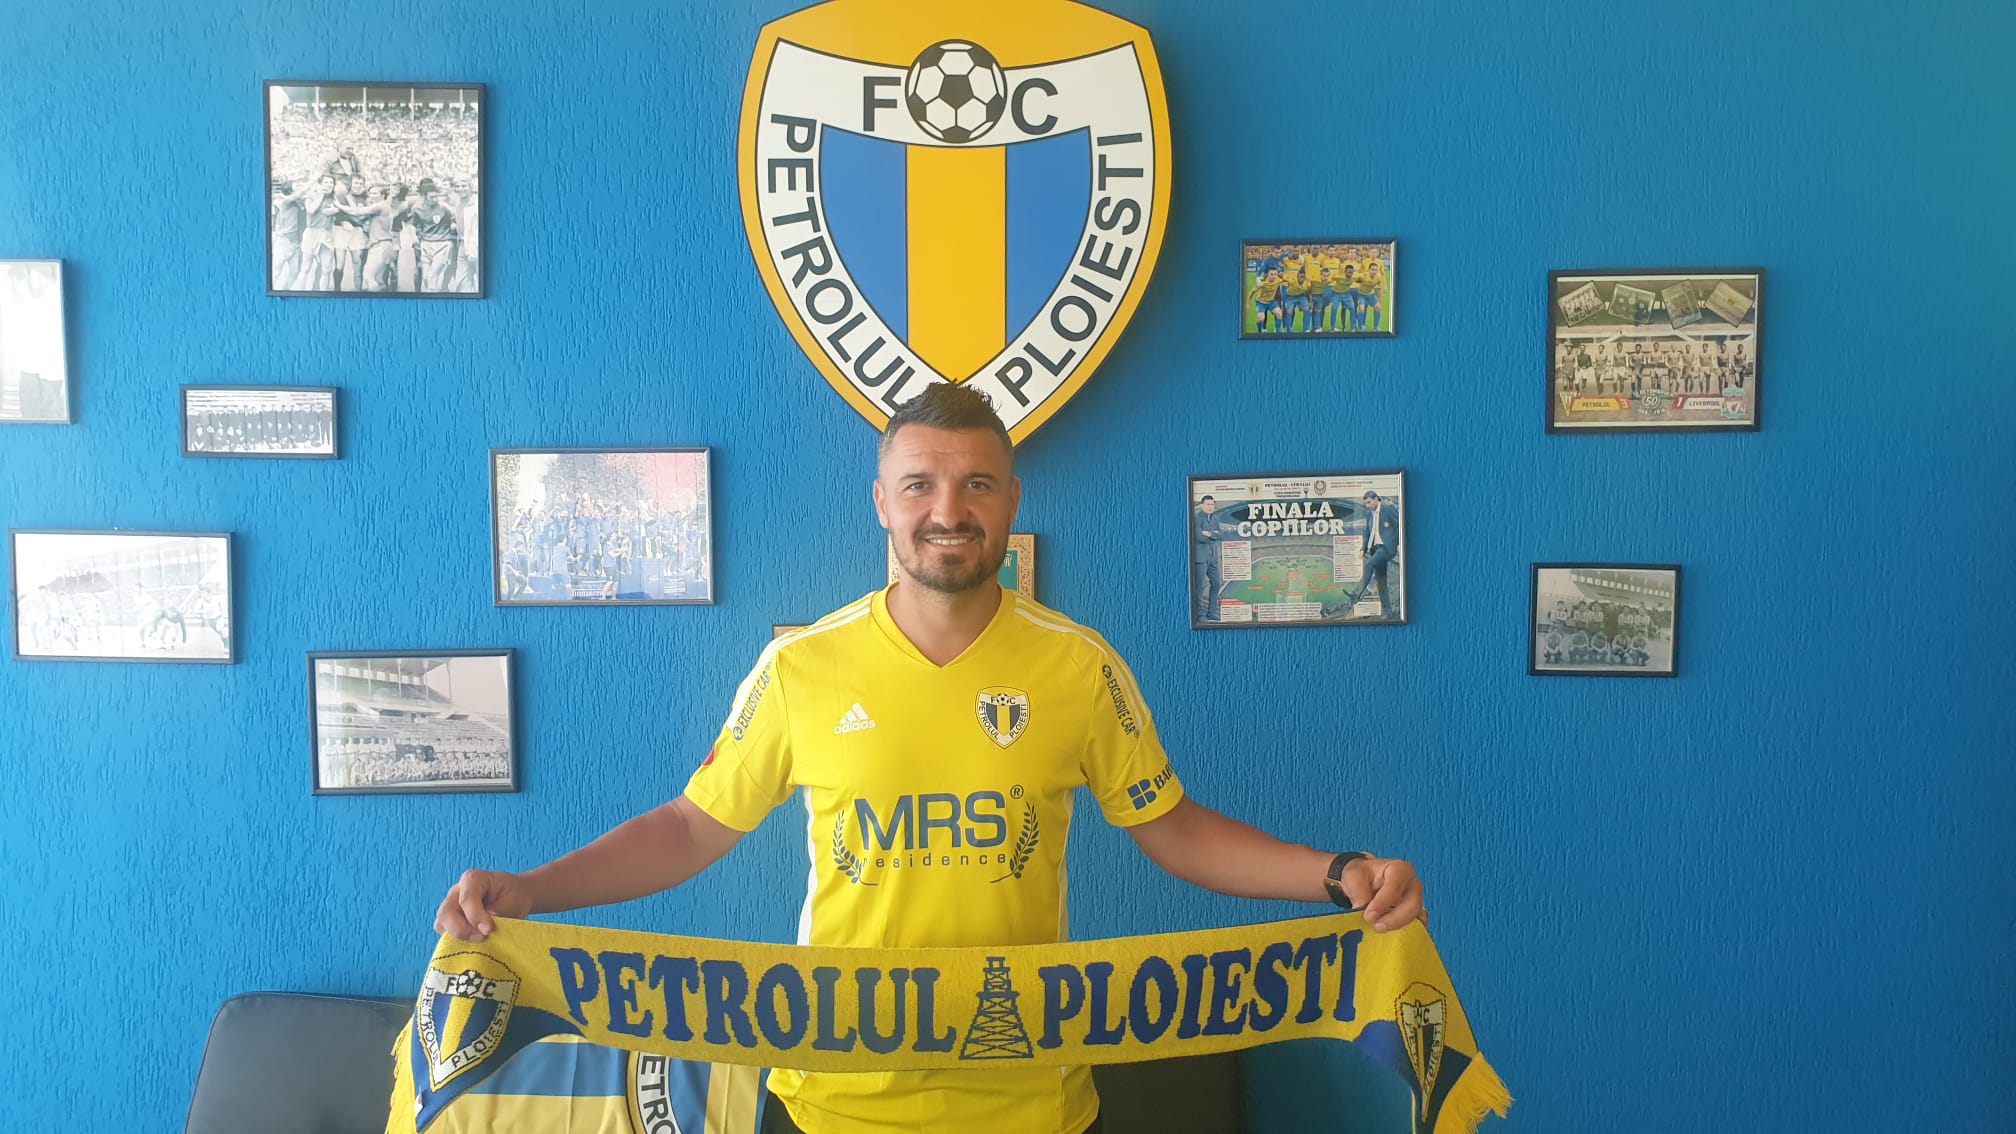 Constantin Budescu a semnat cu Petrolul! “Magicianul” a revenit la Ploiești după 11 ani: “Am spus-o mereu!”. Prima reacție a mijlocașului